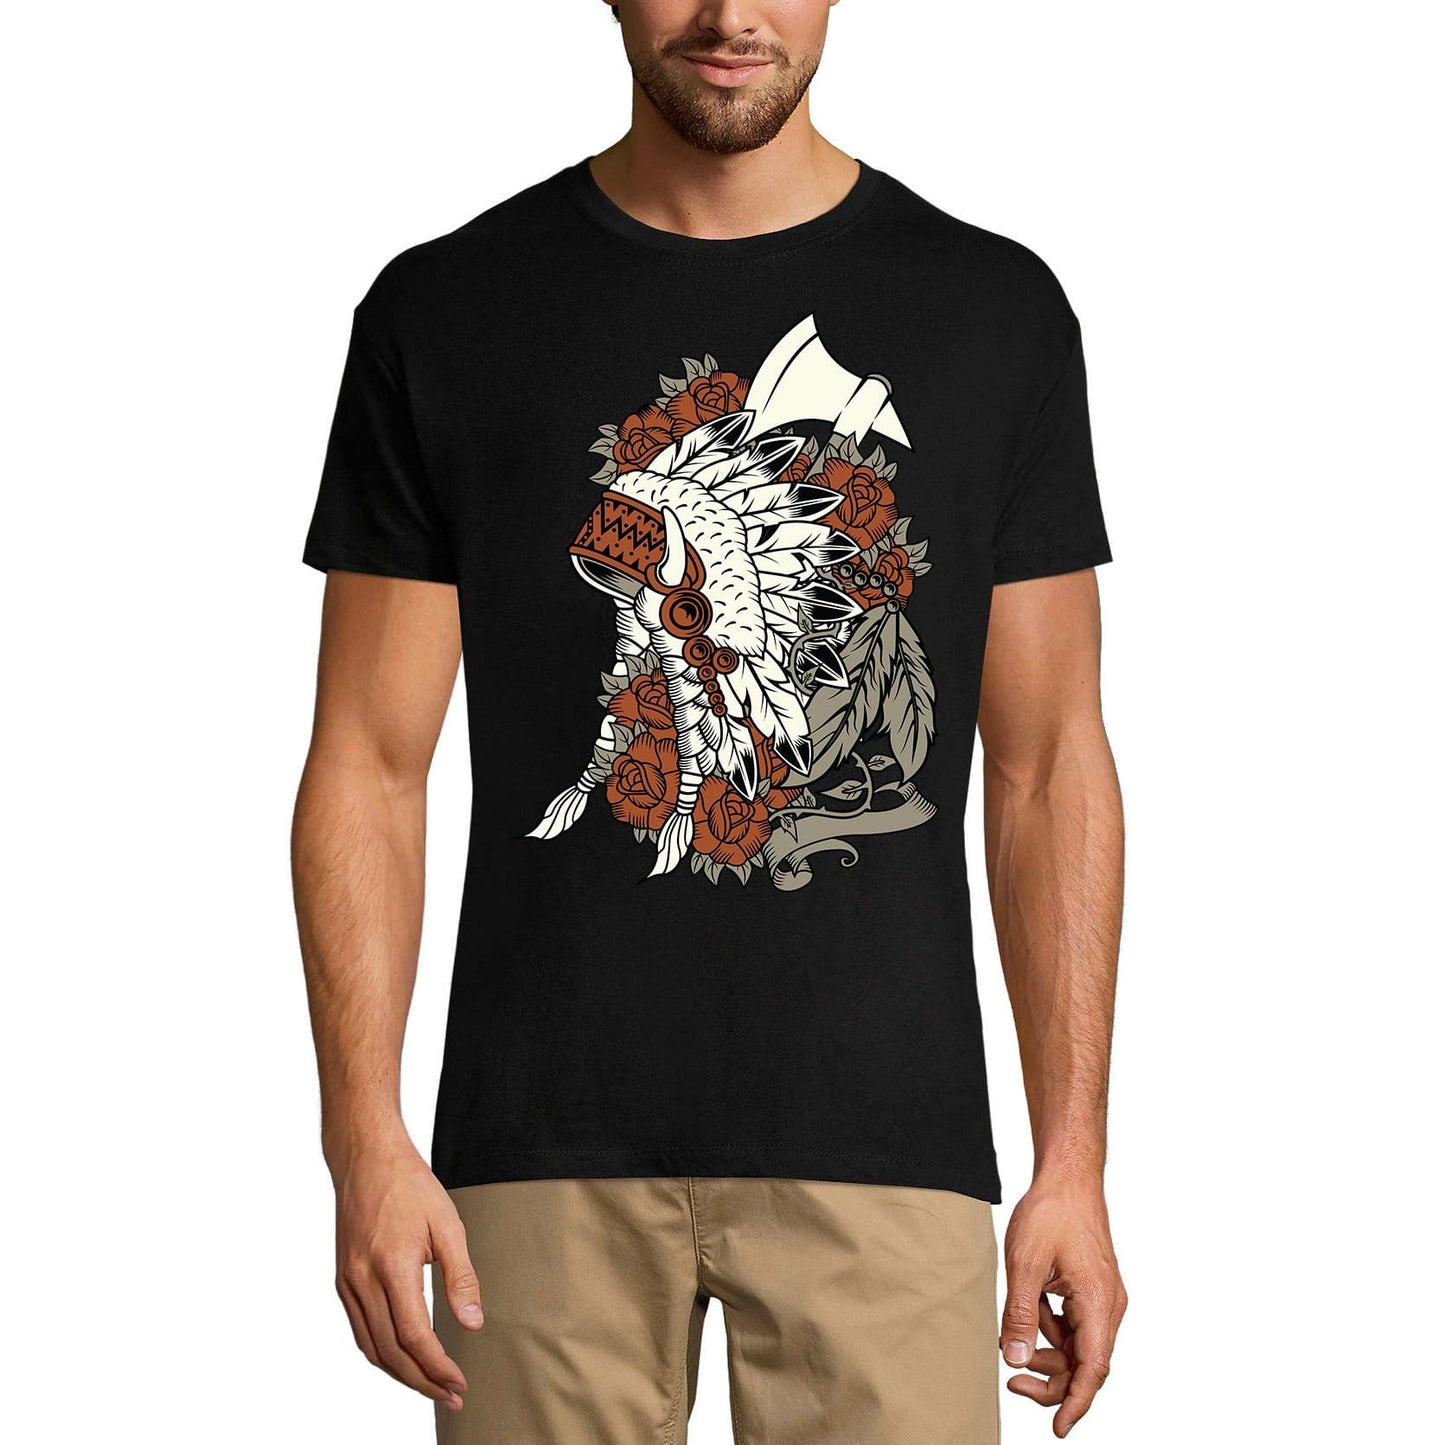 ULTRABASIC Men's Graphic T-Shirt Indians War Bonnet - Battle Chief Tee Shirt